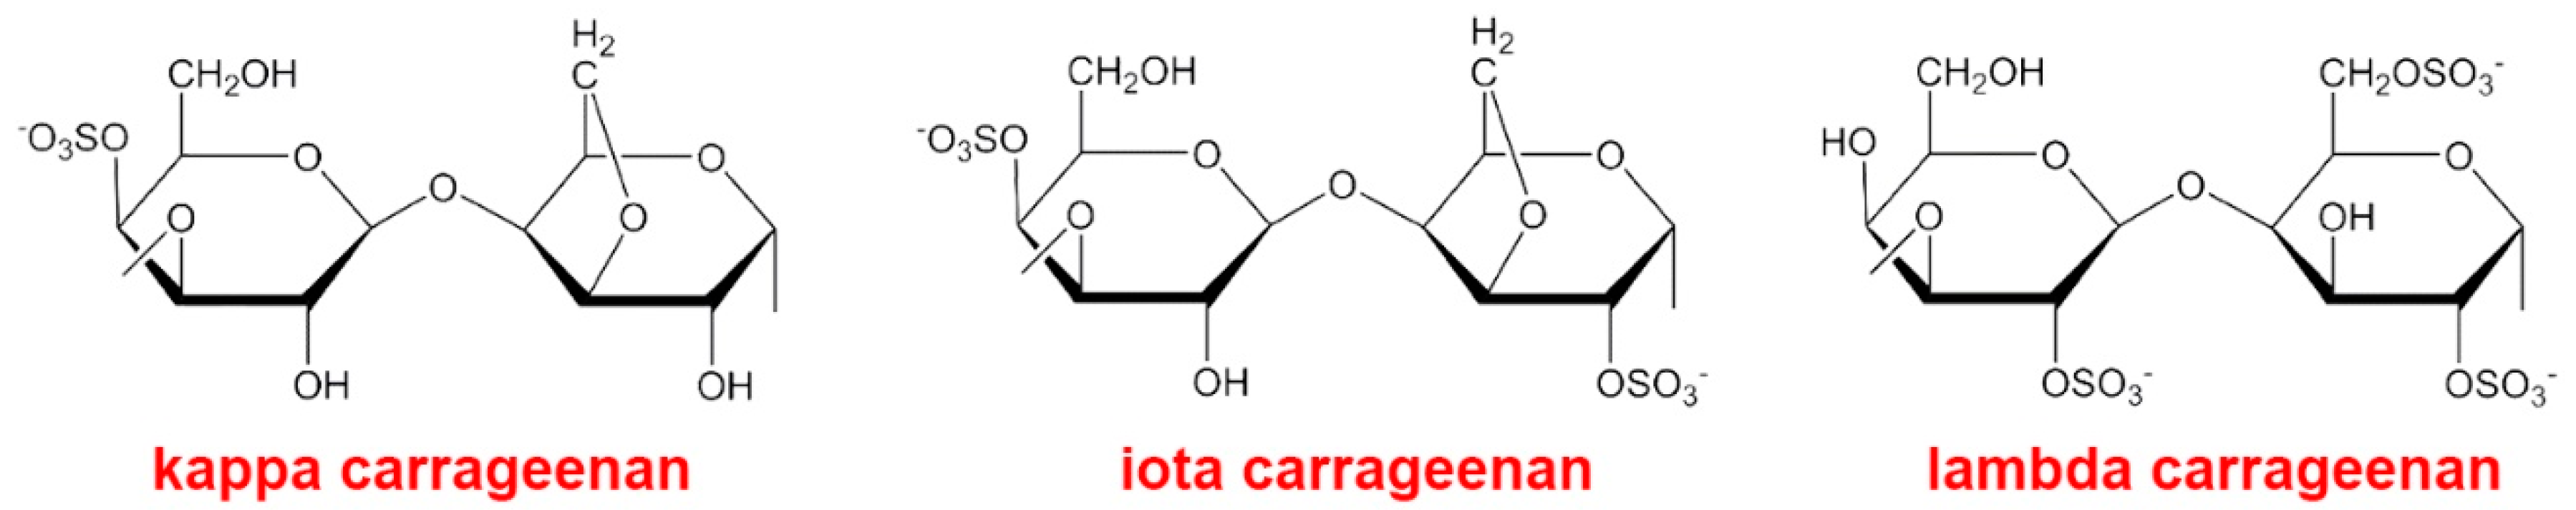 Йота каррагинан. Каппа каррагинан формула. Каппа каррагинан химическая формула. Каррагинан формула. Каррагинан строение.